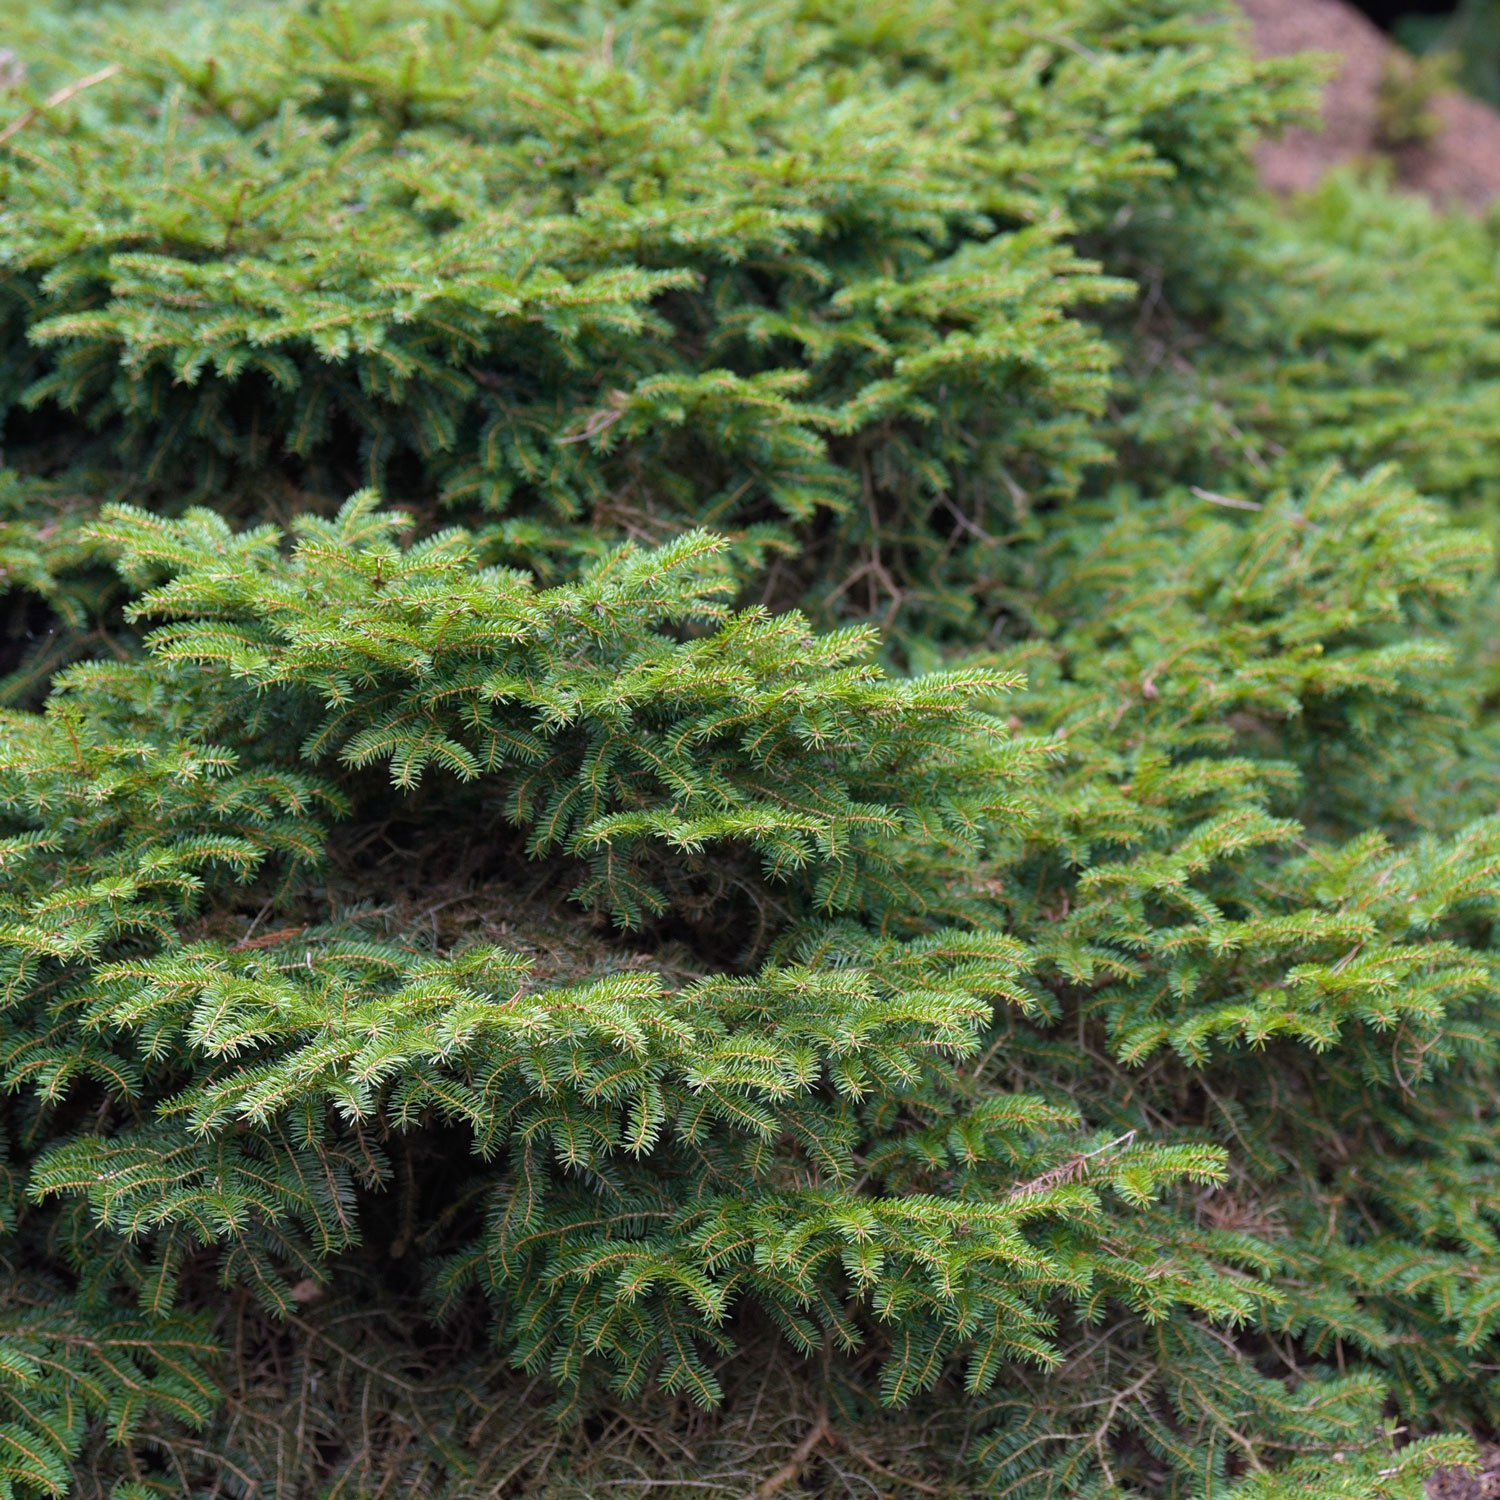 birds-nest-spruce.jpg